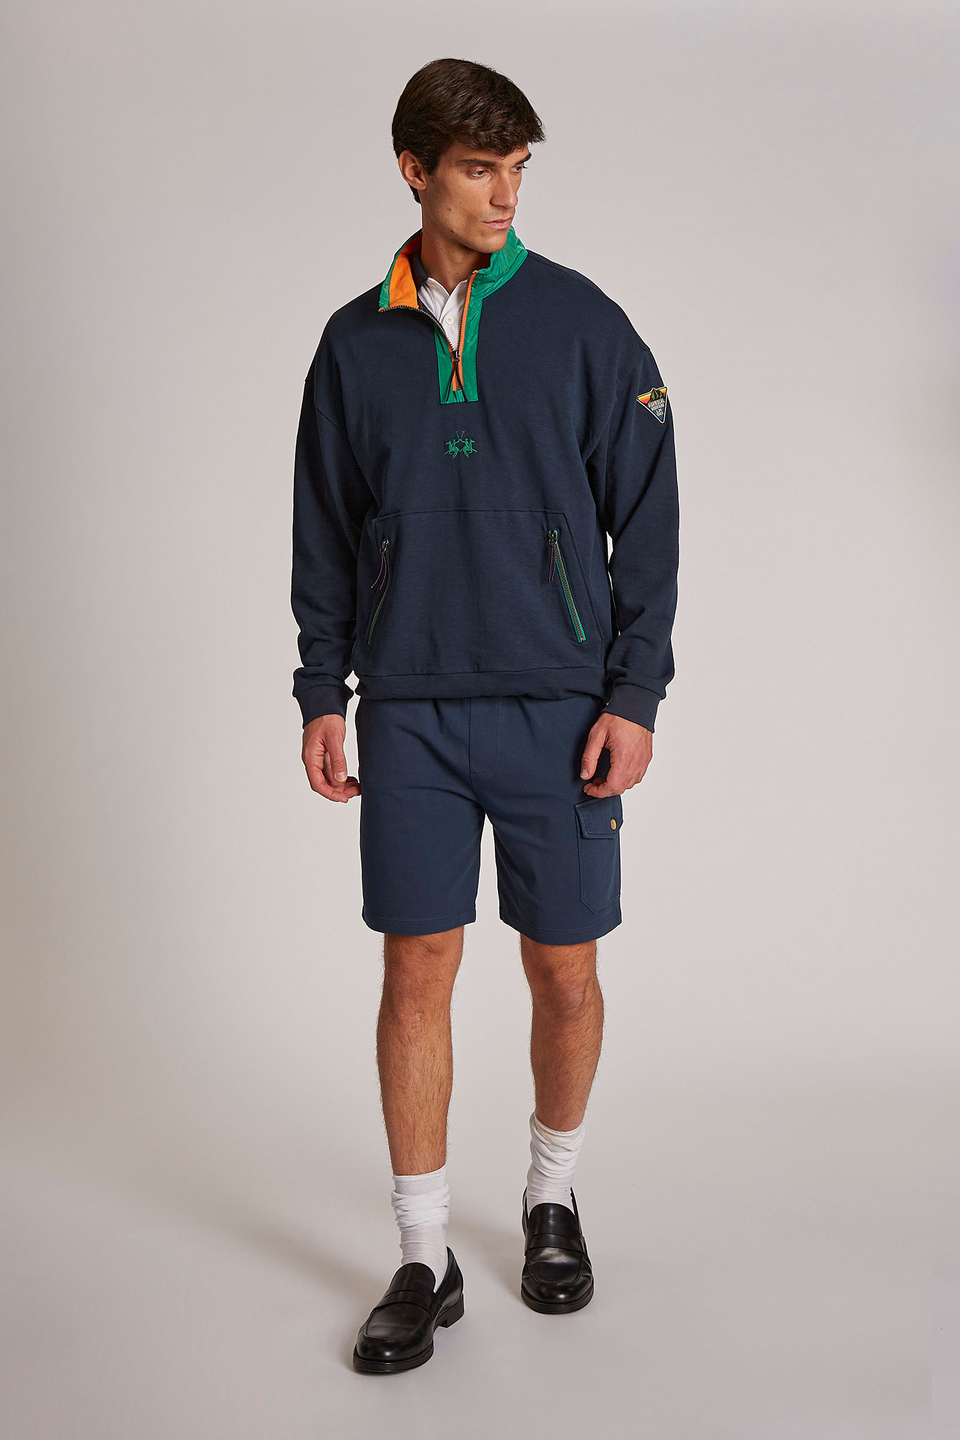 Herren-Sweatshirt aus 100 % Baumwolle mit Reißverschluss, oversized Modell - La Martina - Official Online Shop